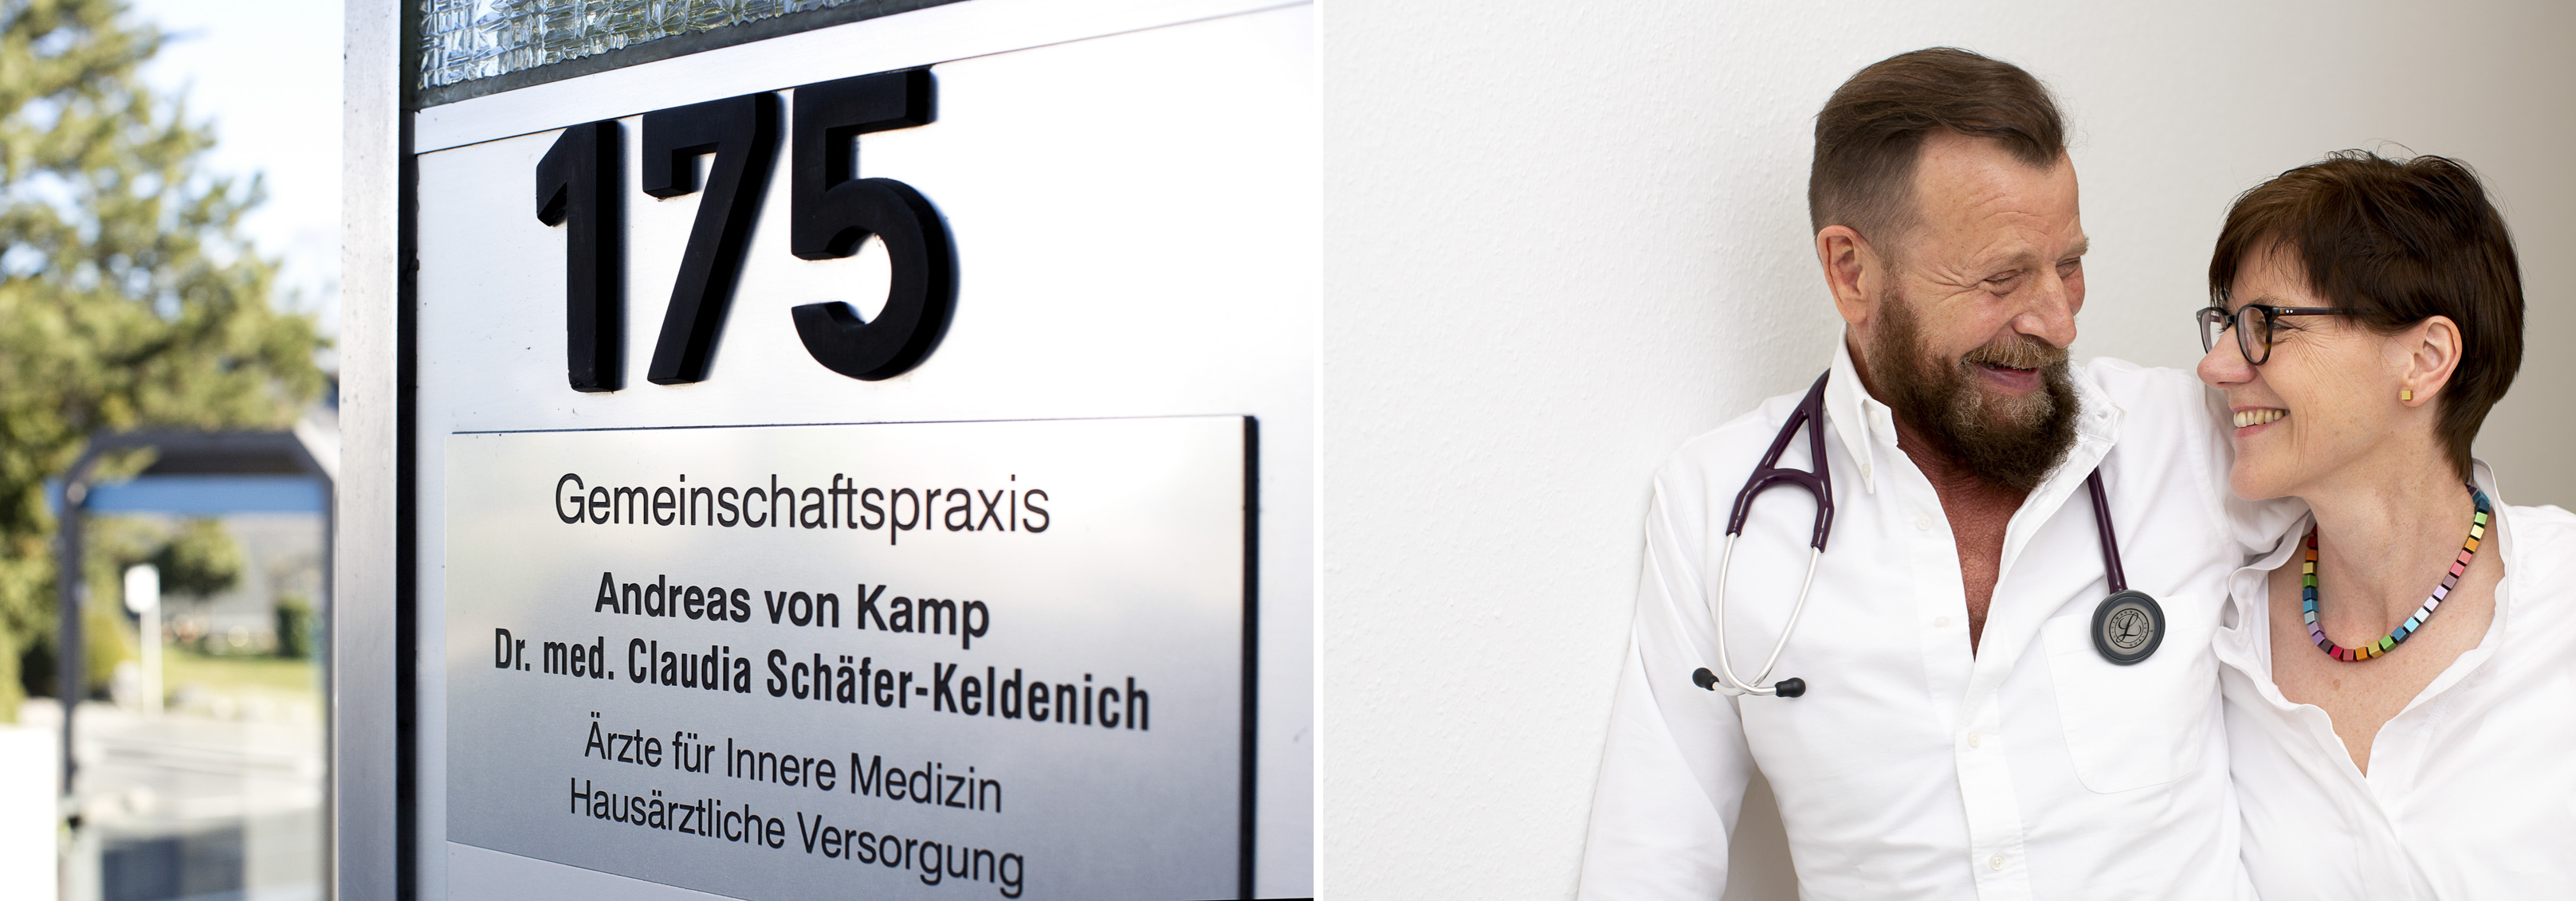 Imagefotos für die Gemeinschaftspraxis A. von Kamp & Dr. med. C. Schäfer-Keldenich, Wuppertal